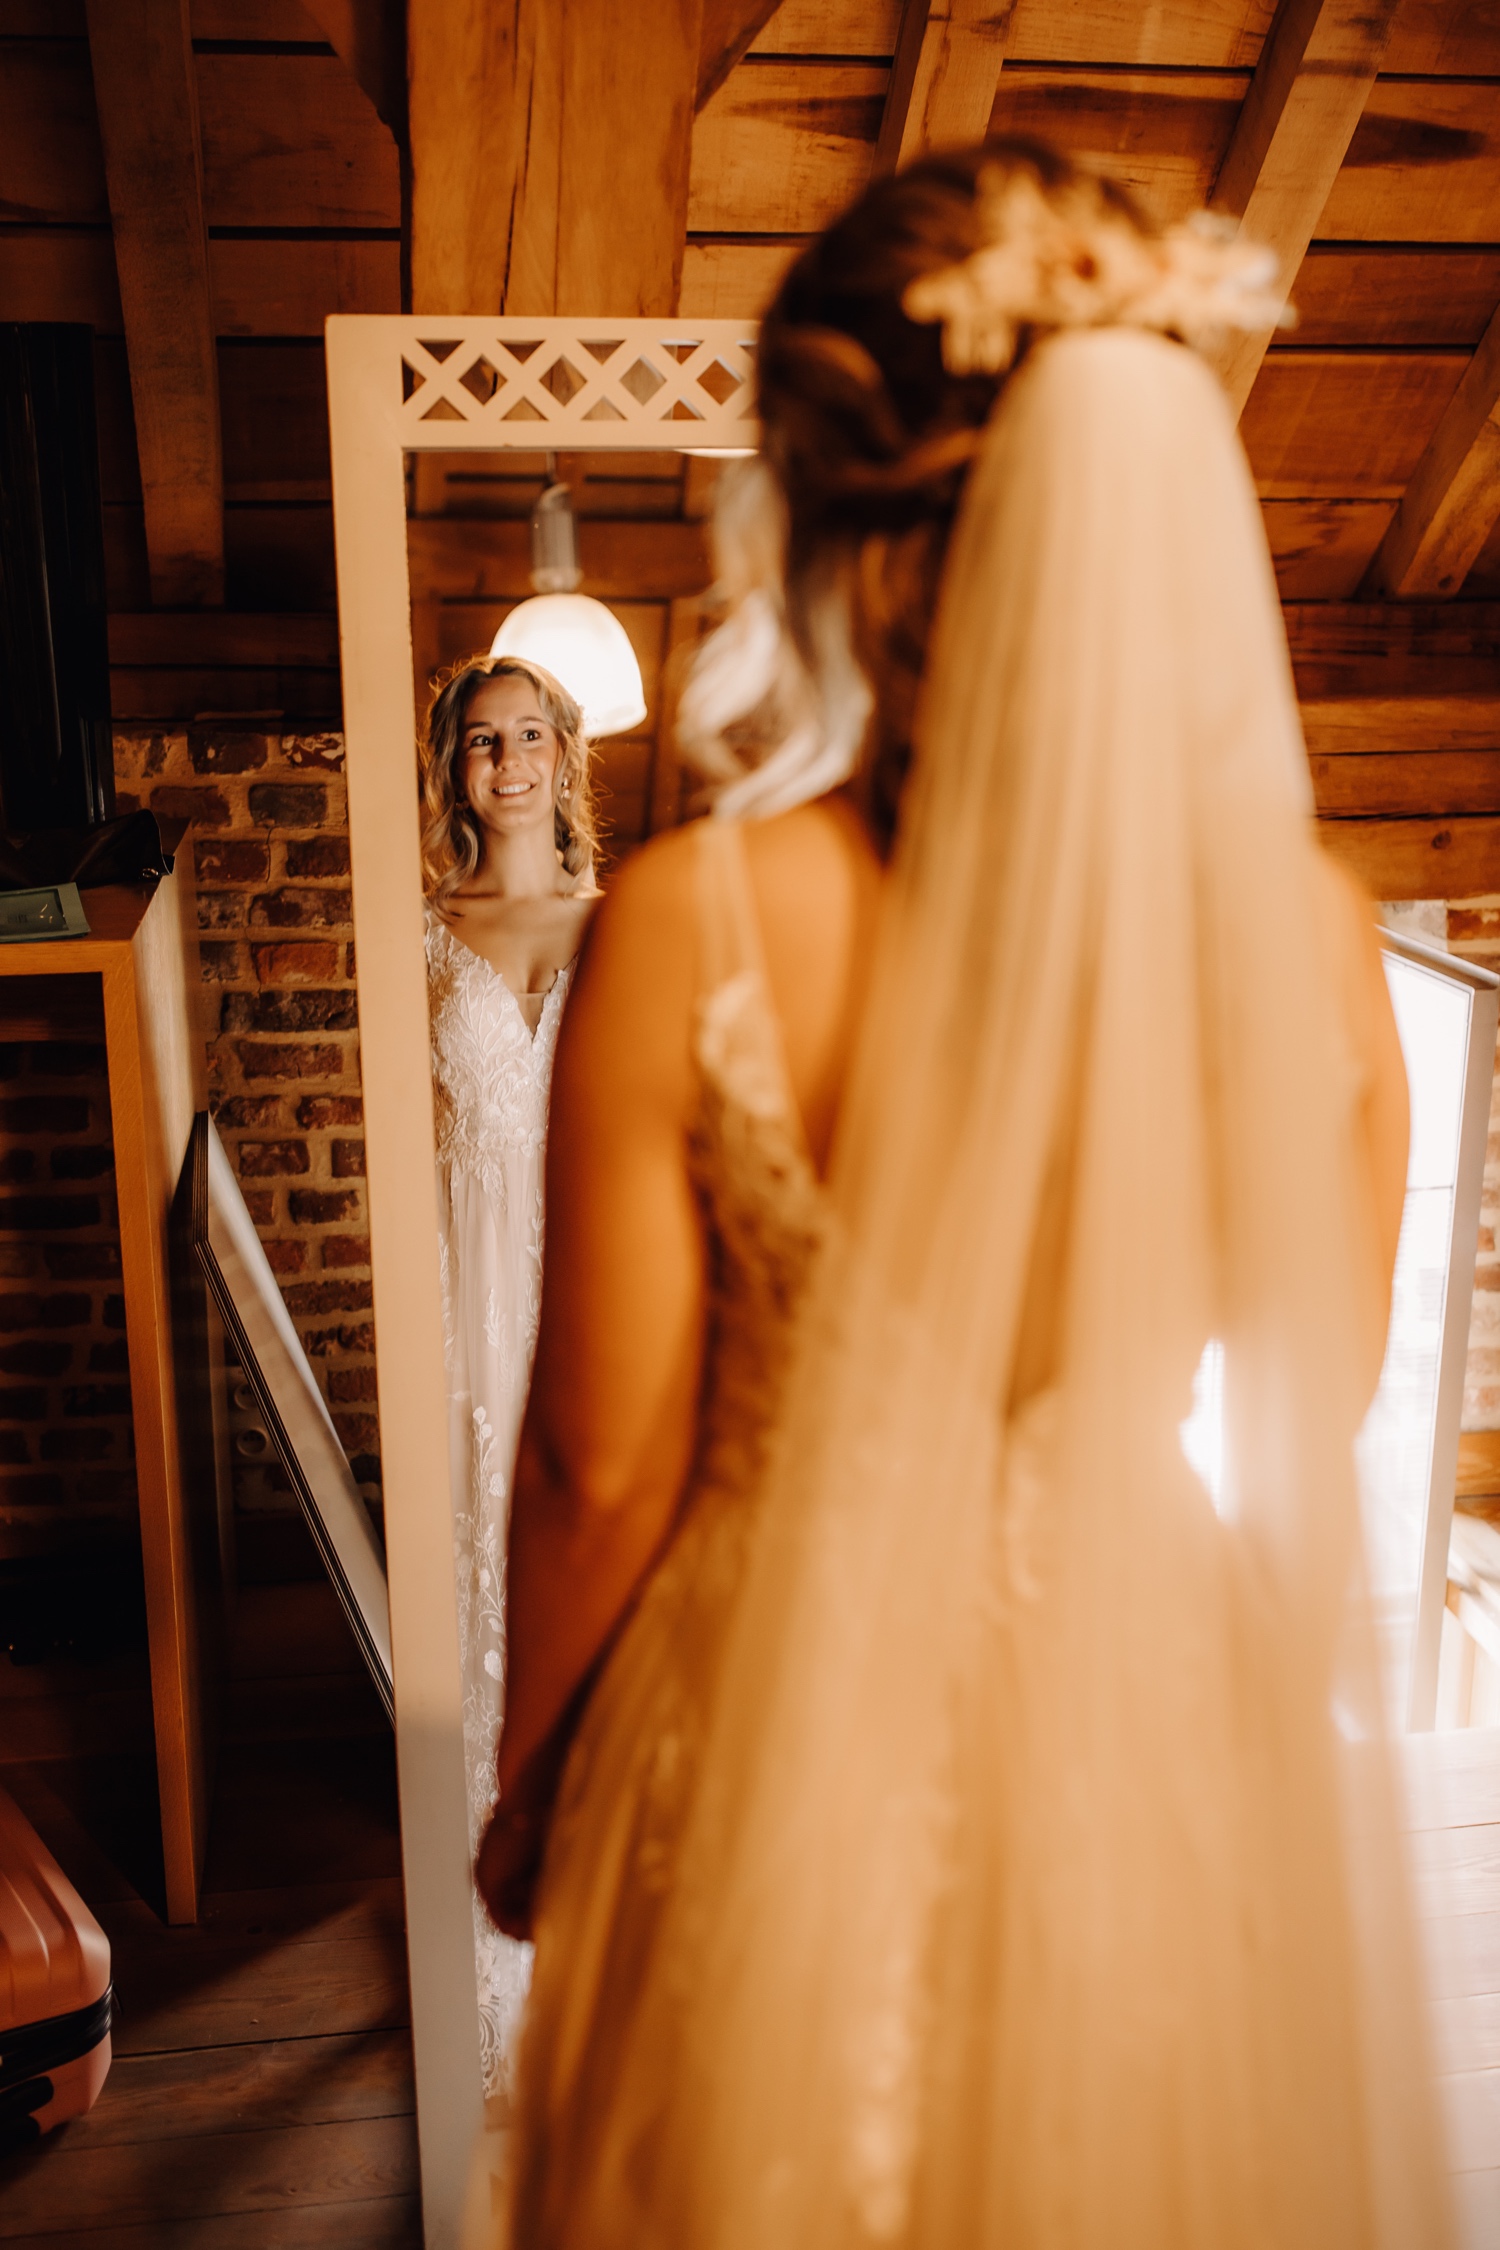 Huwelijksfotograaf Limburg - bruid kijkt in de spiegel